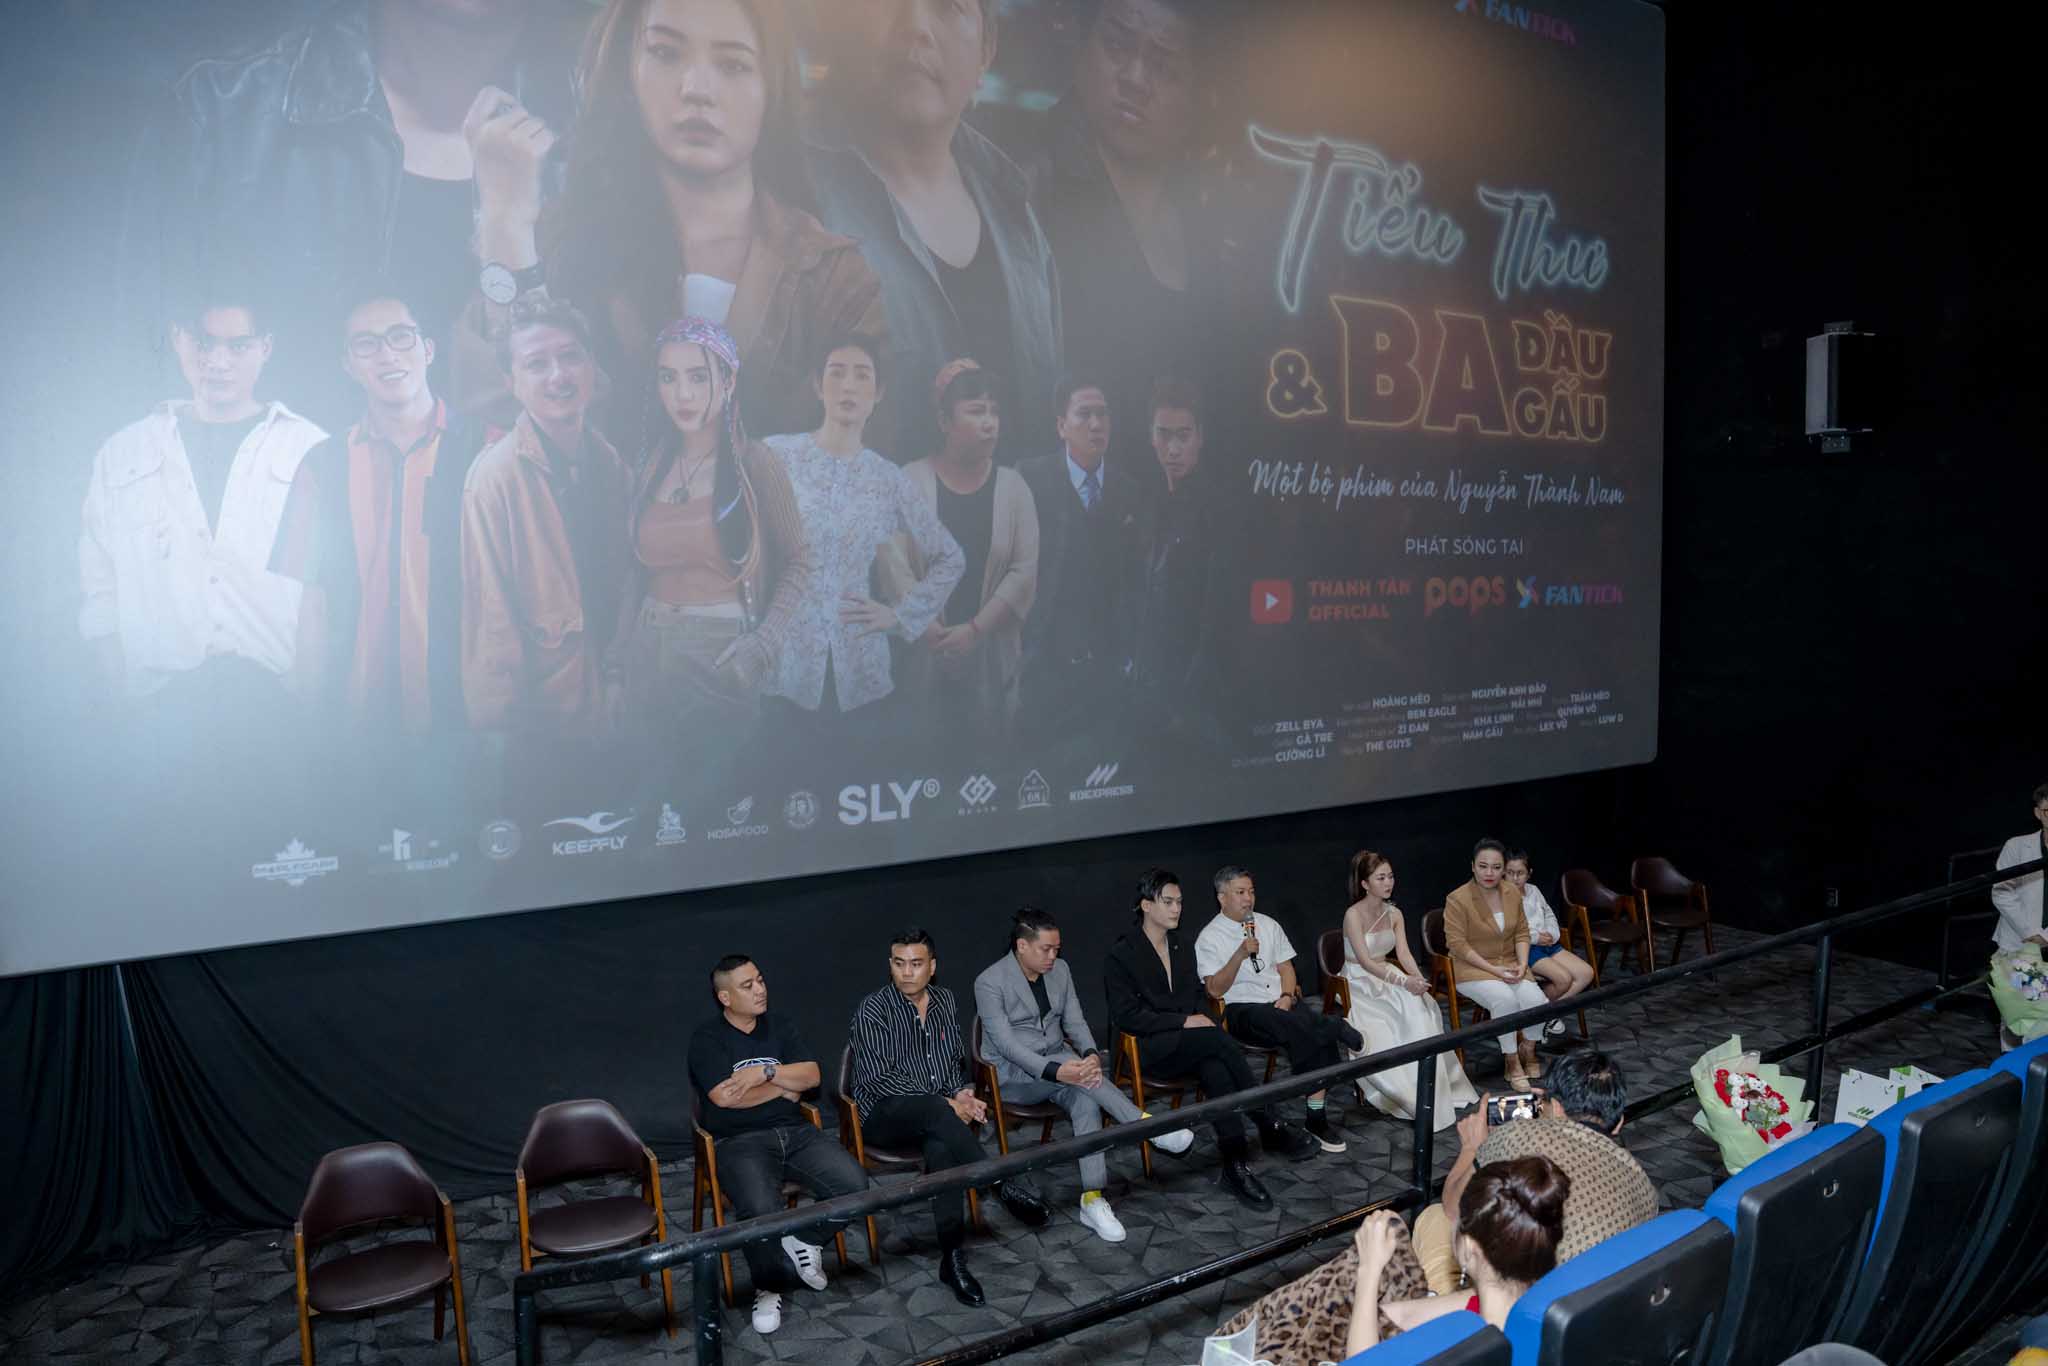 Web-drama “Tiểu thư và ba đầu gấu” được ứng dụng chiếu phim miễn phí Fantick tài trợ khủng